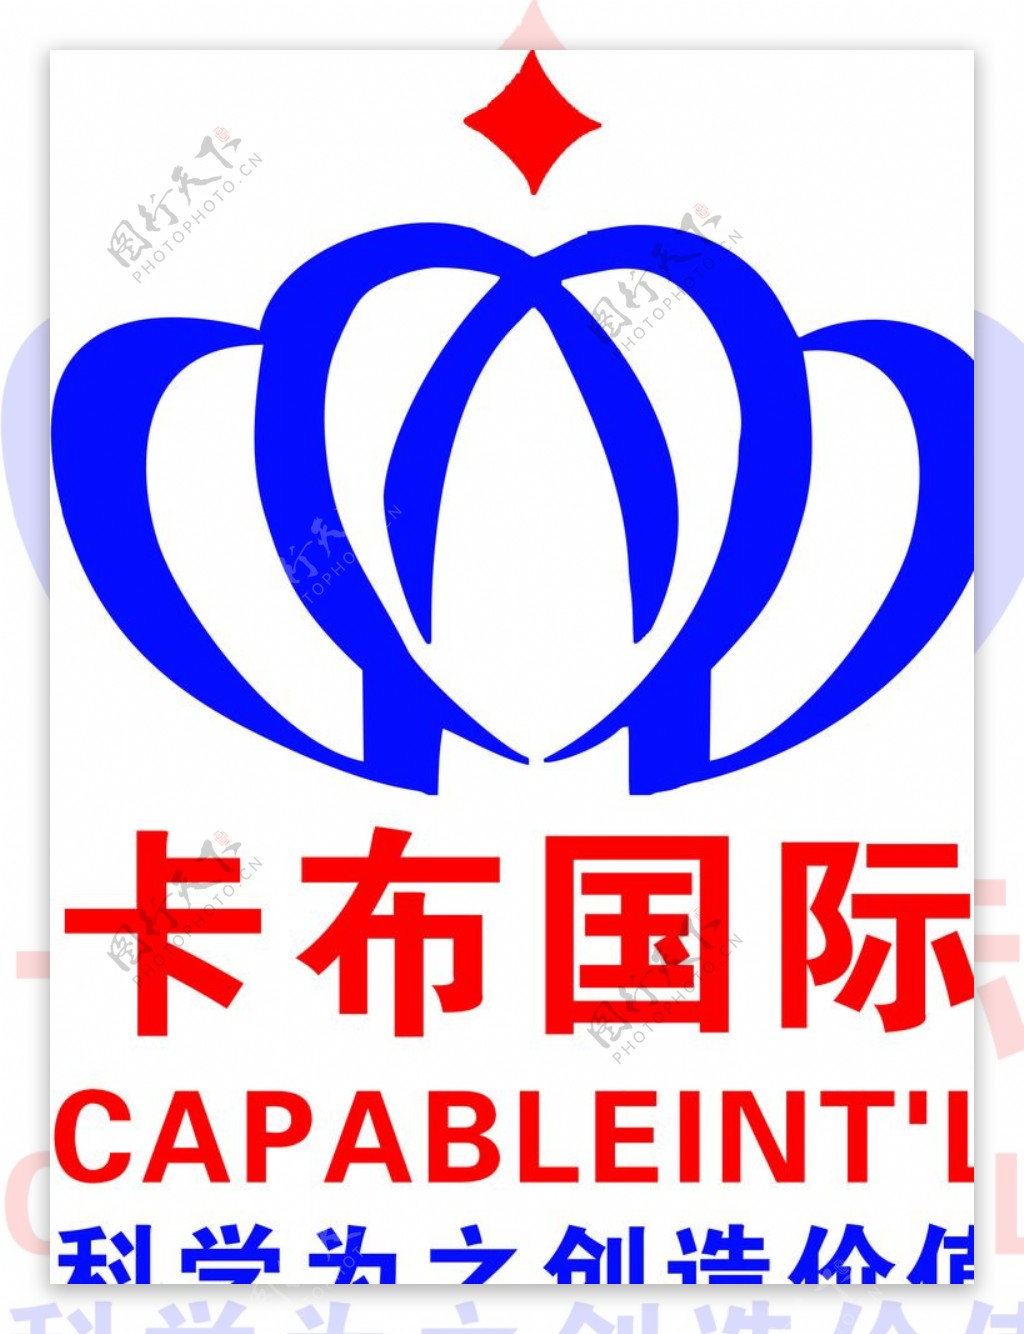 卡布国际卡比布标志红色蓝色图片